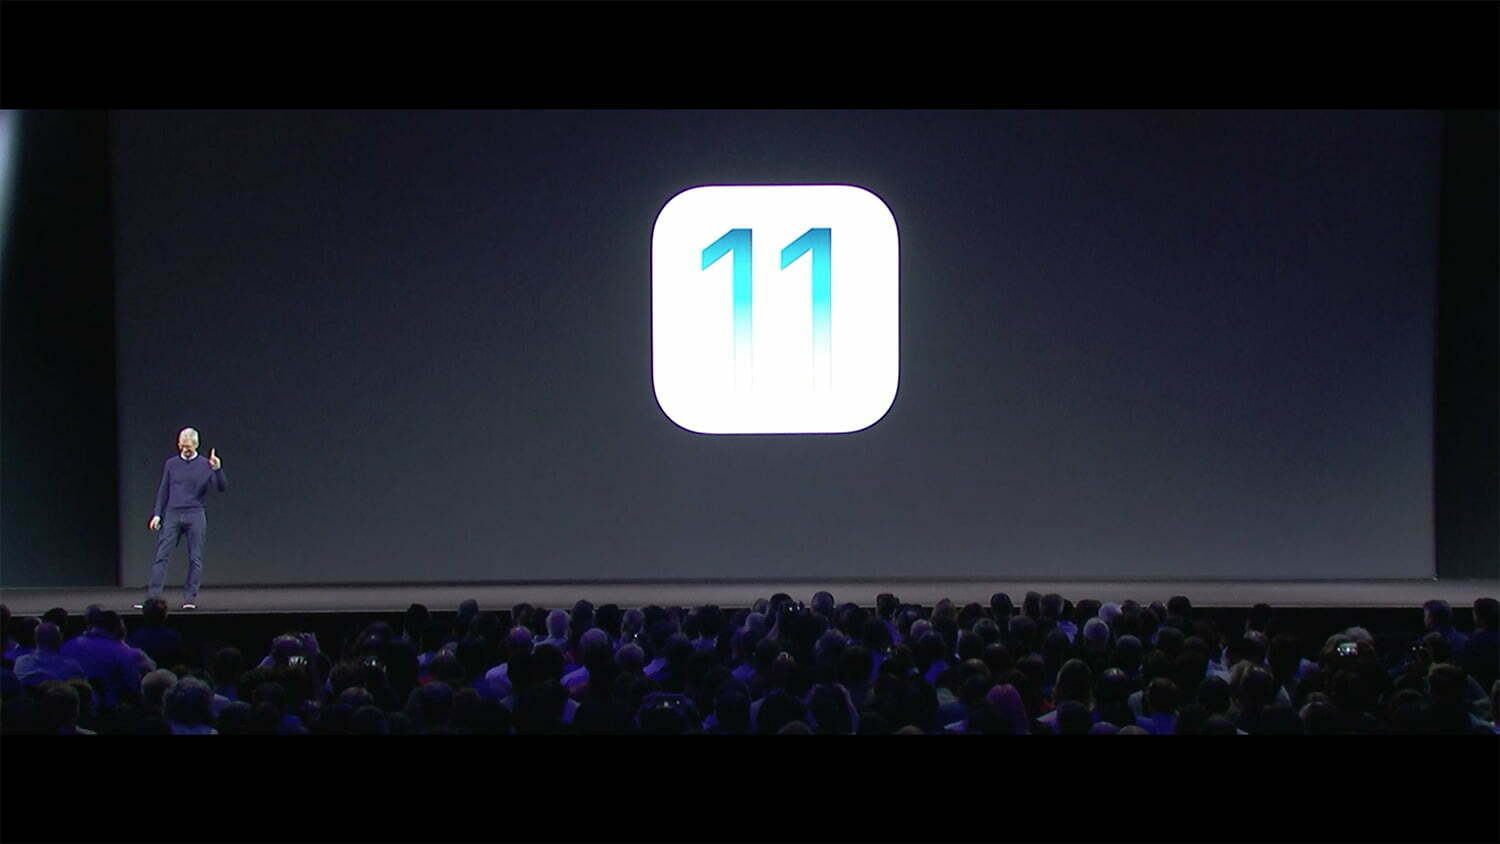 بروزرسانی جدید iOS 11 منتشر شد ؛ تغییرات جدیدی که قبلا در iOS ندیدیم